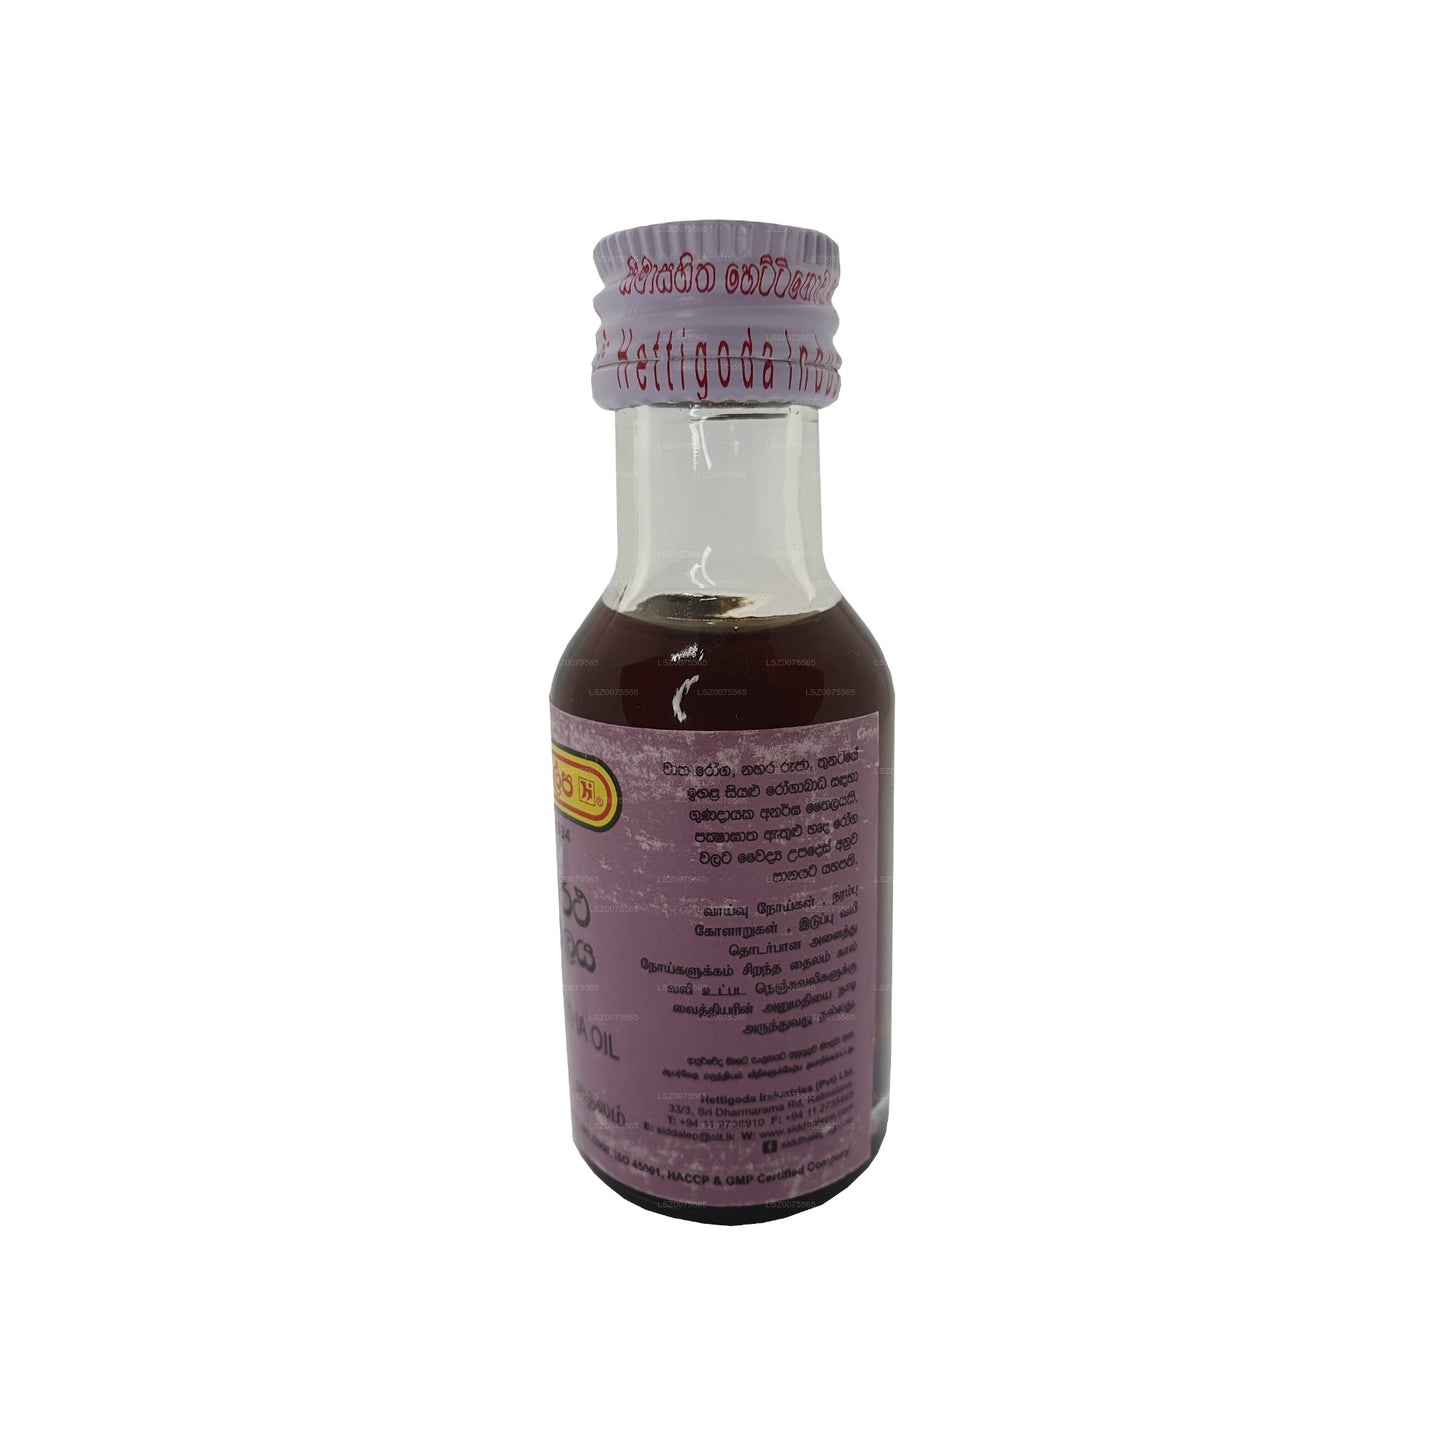 Siddhalepa Siddhartha Oil (30ml)